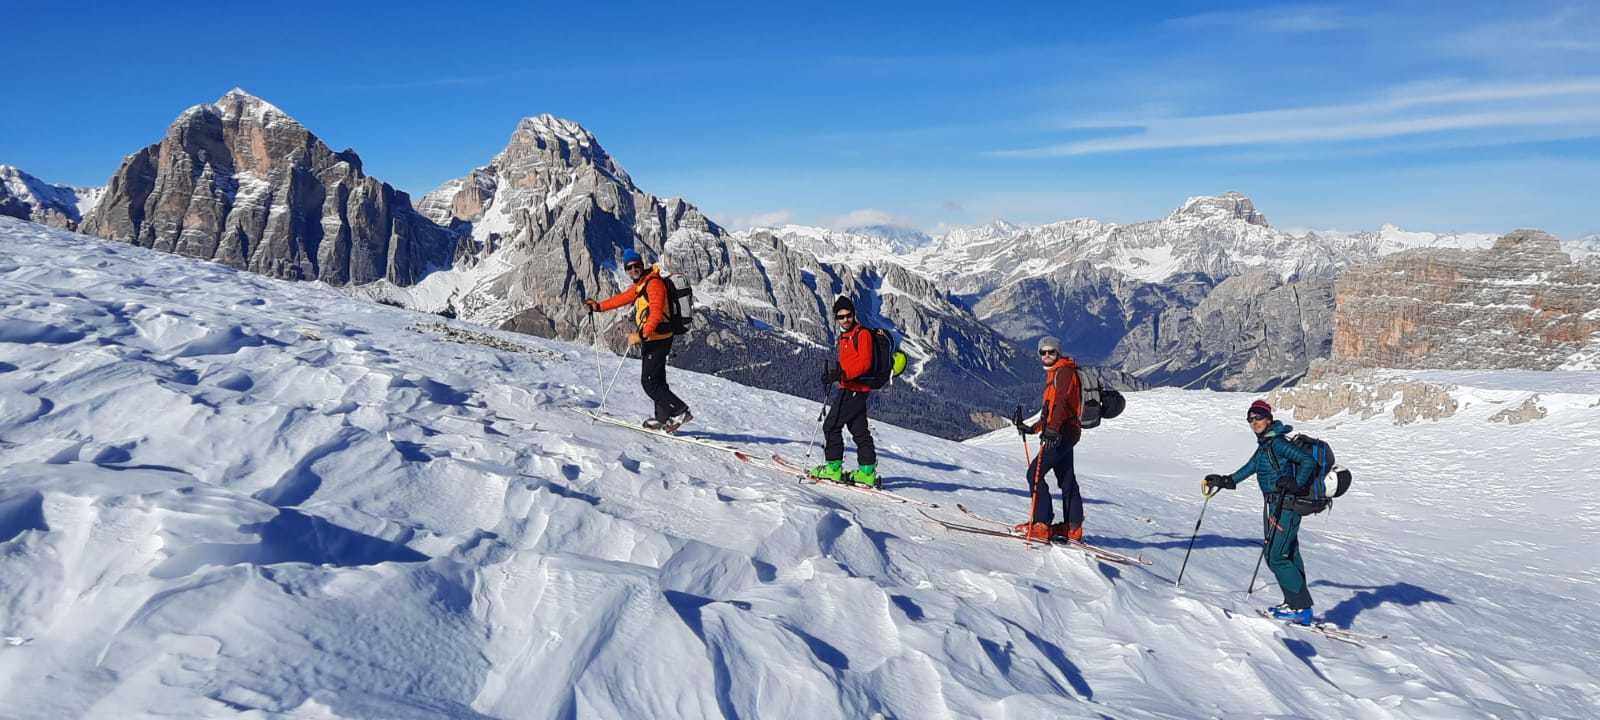 Groupe de skieurs sur la crête